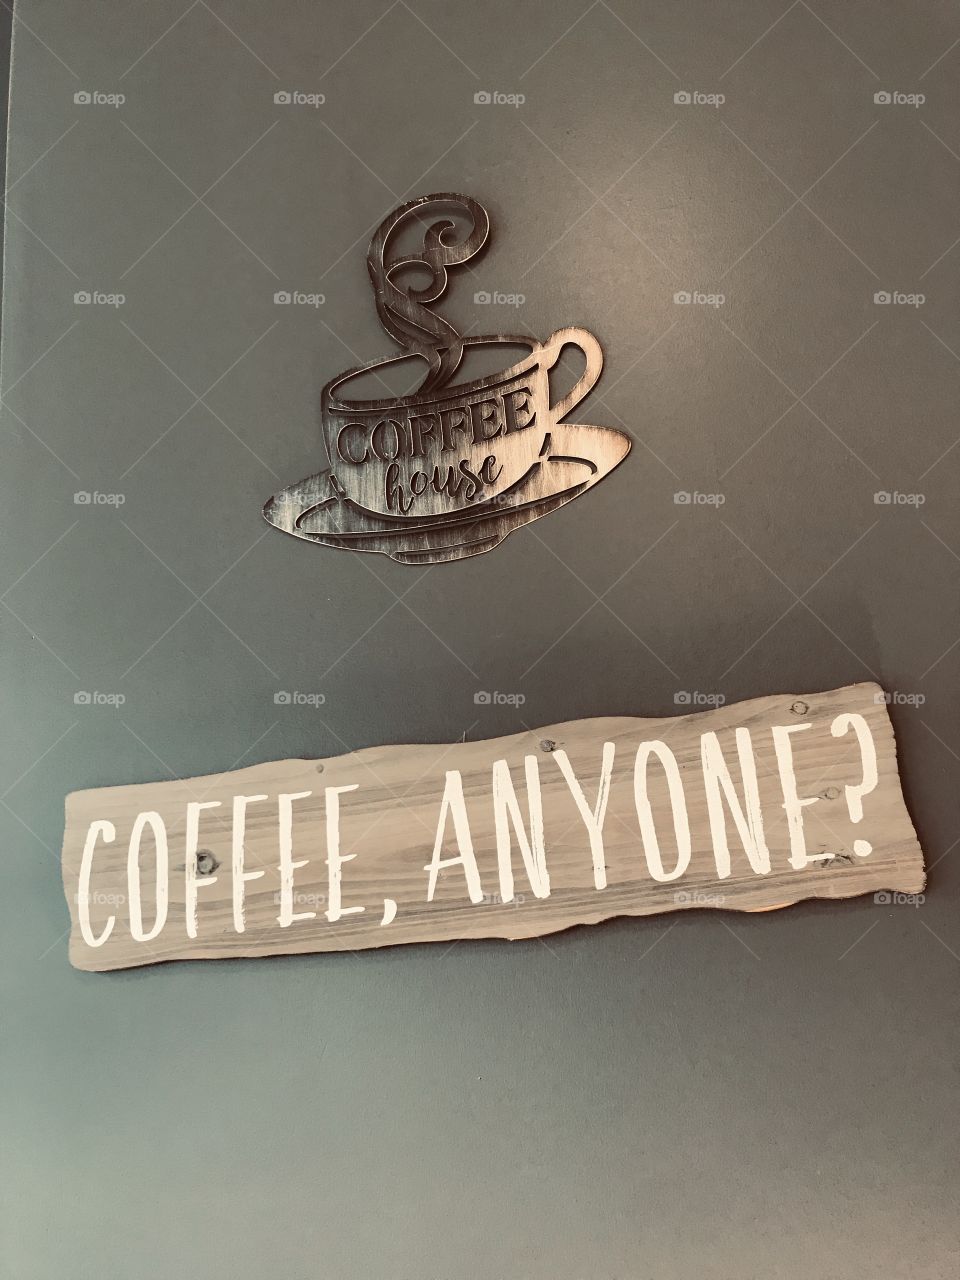 Coffee, Anyone?